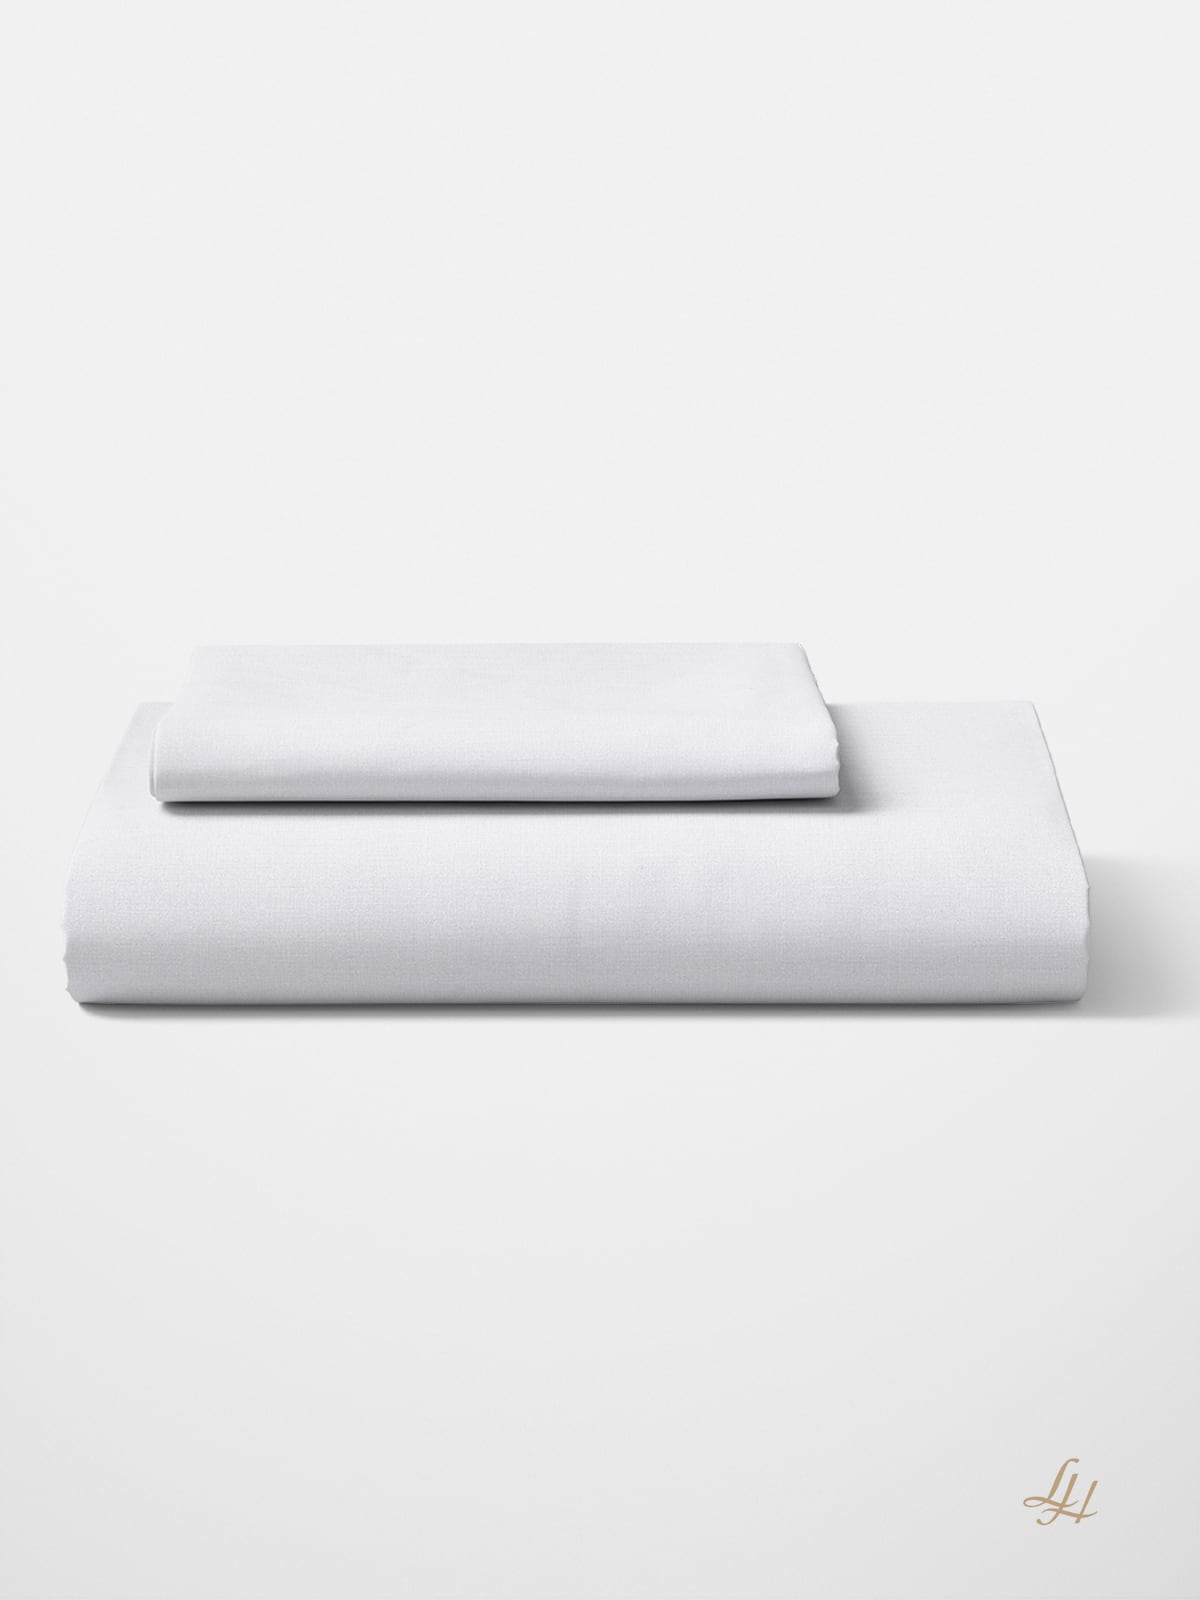 Bettbezug aus Reinleinen-fein in Uni-Farbe Weiß gefaltet